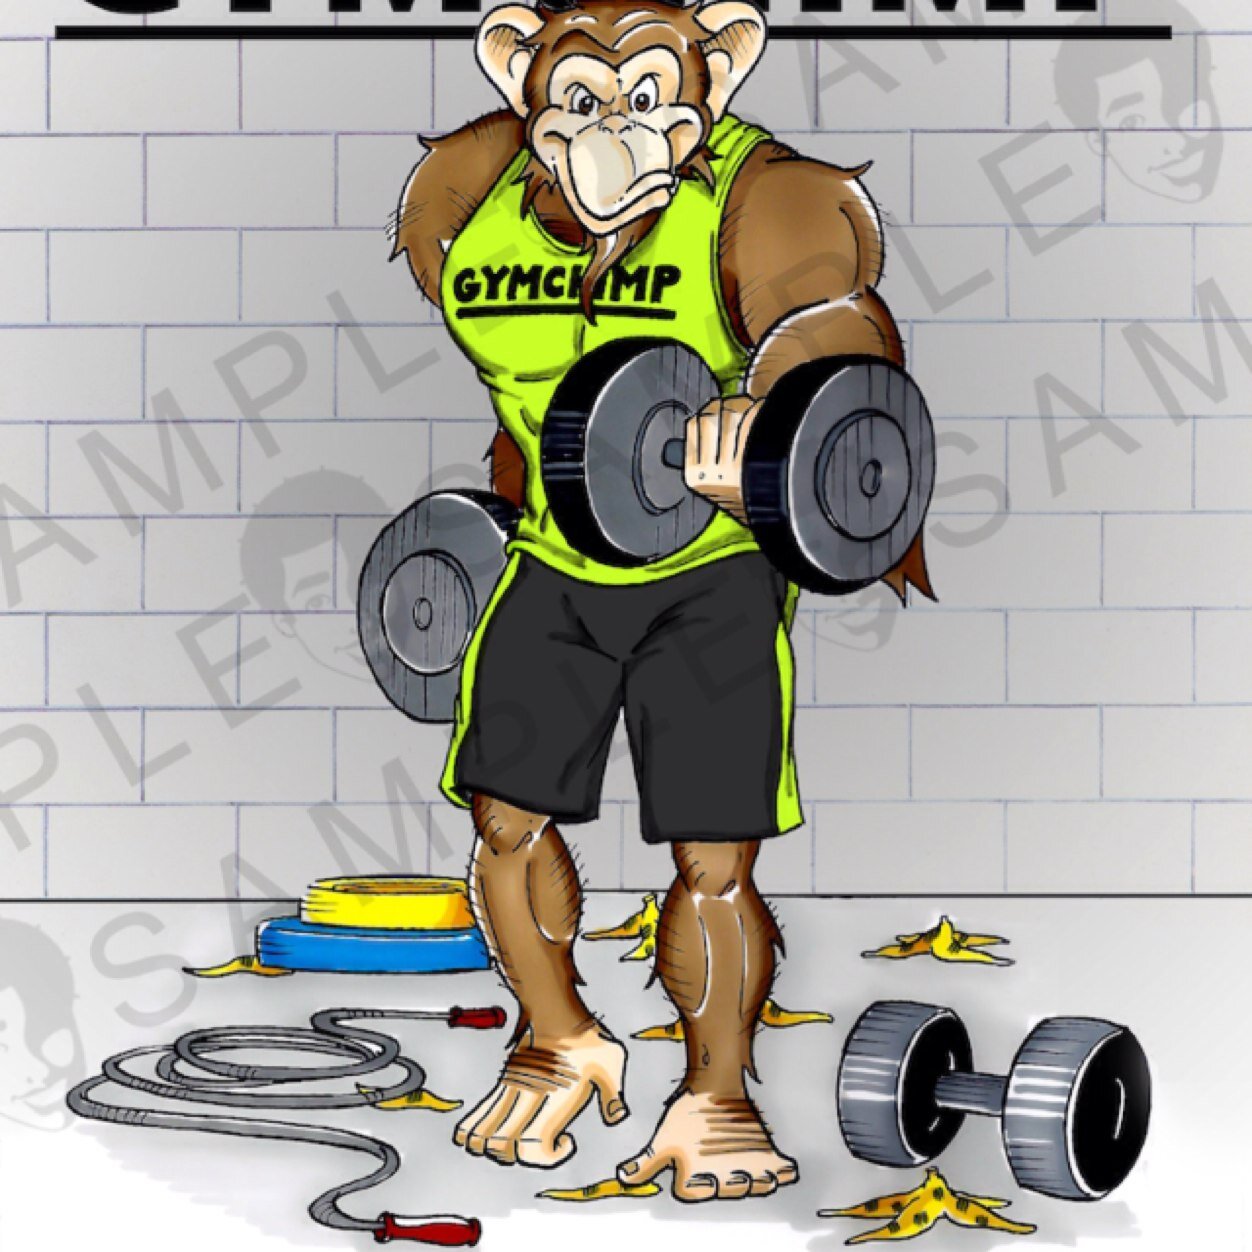 Gym Chimp